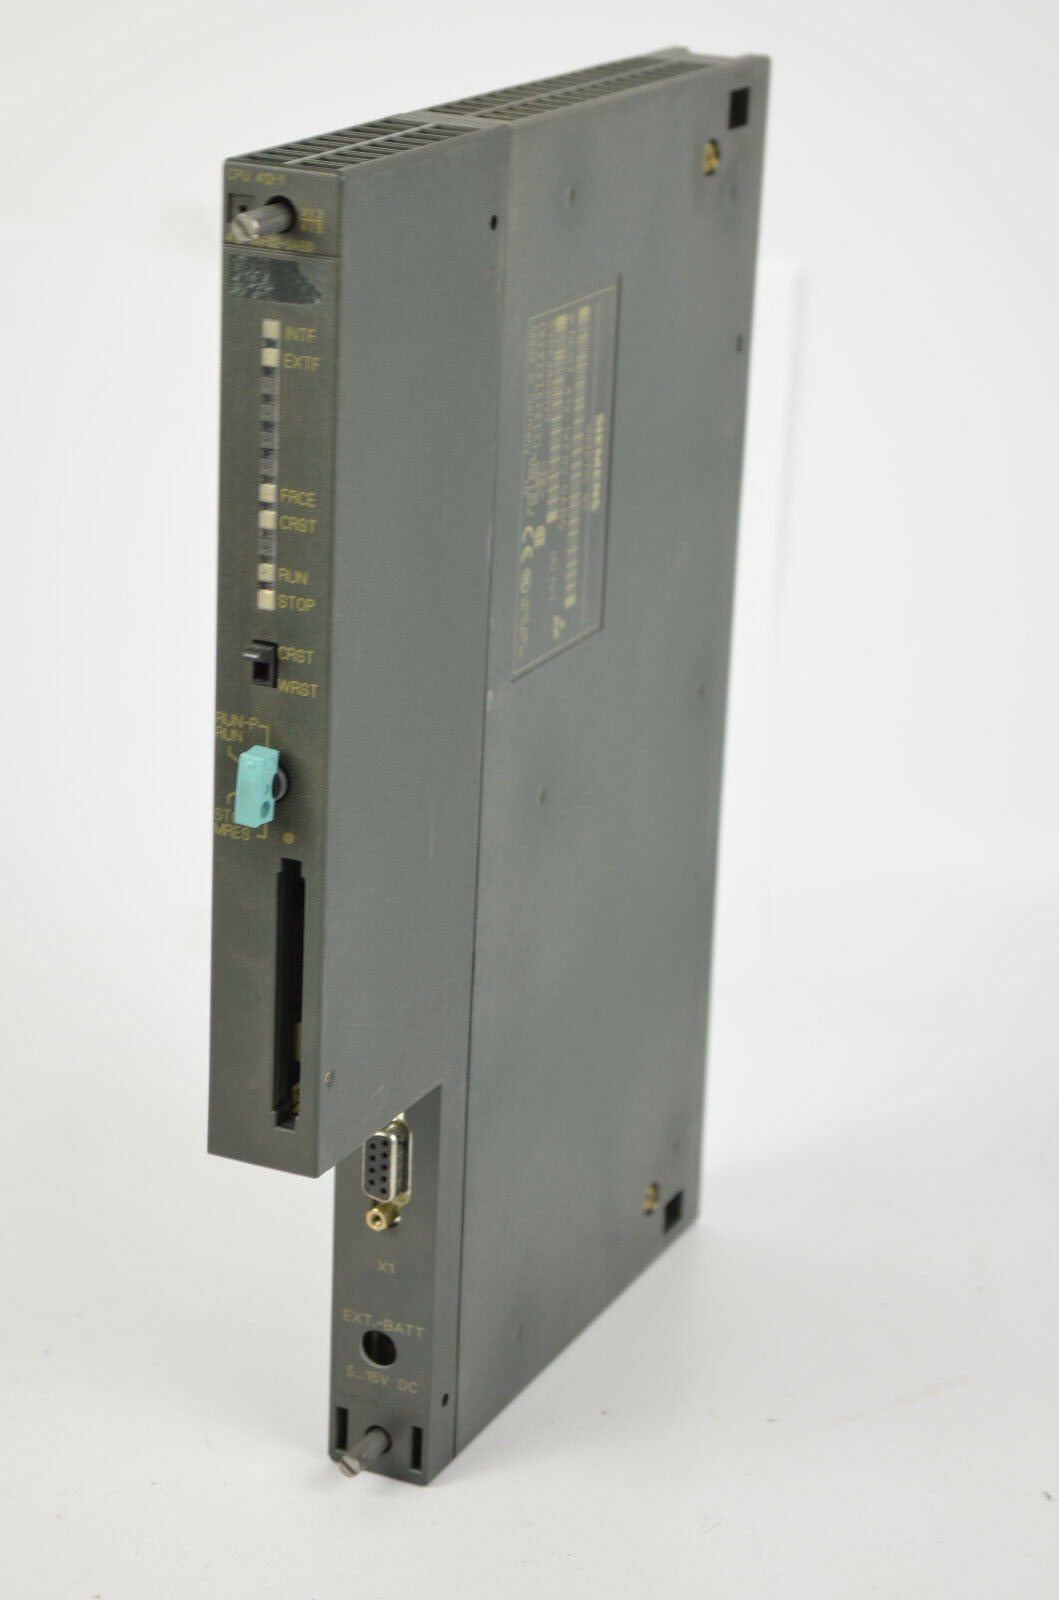 Siemens simatic S7-400 CPU 412-1 6ES7 412-1XF02-0AB0 ( 6ES7412-1XF02-0AB0 ) E2